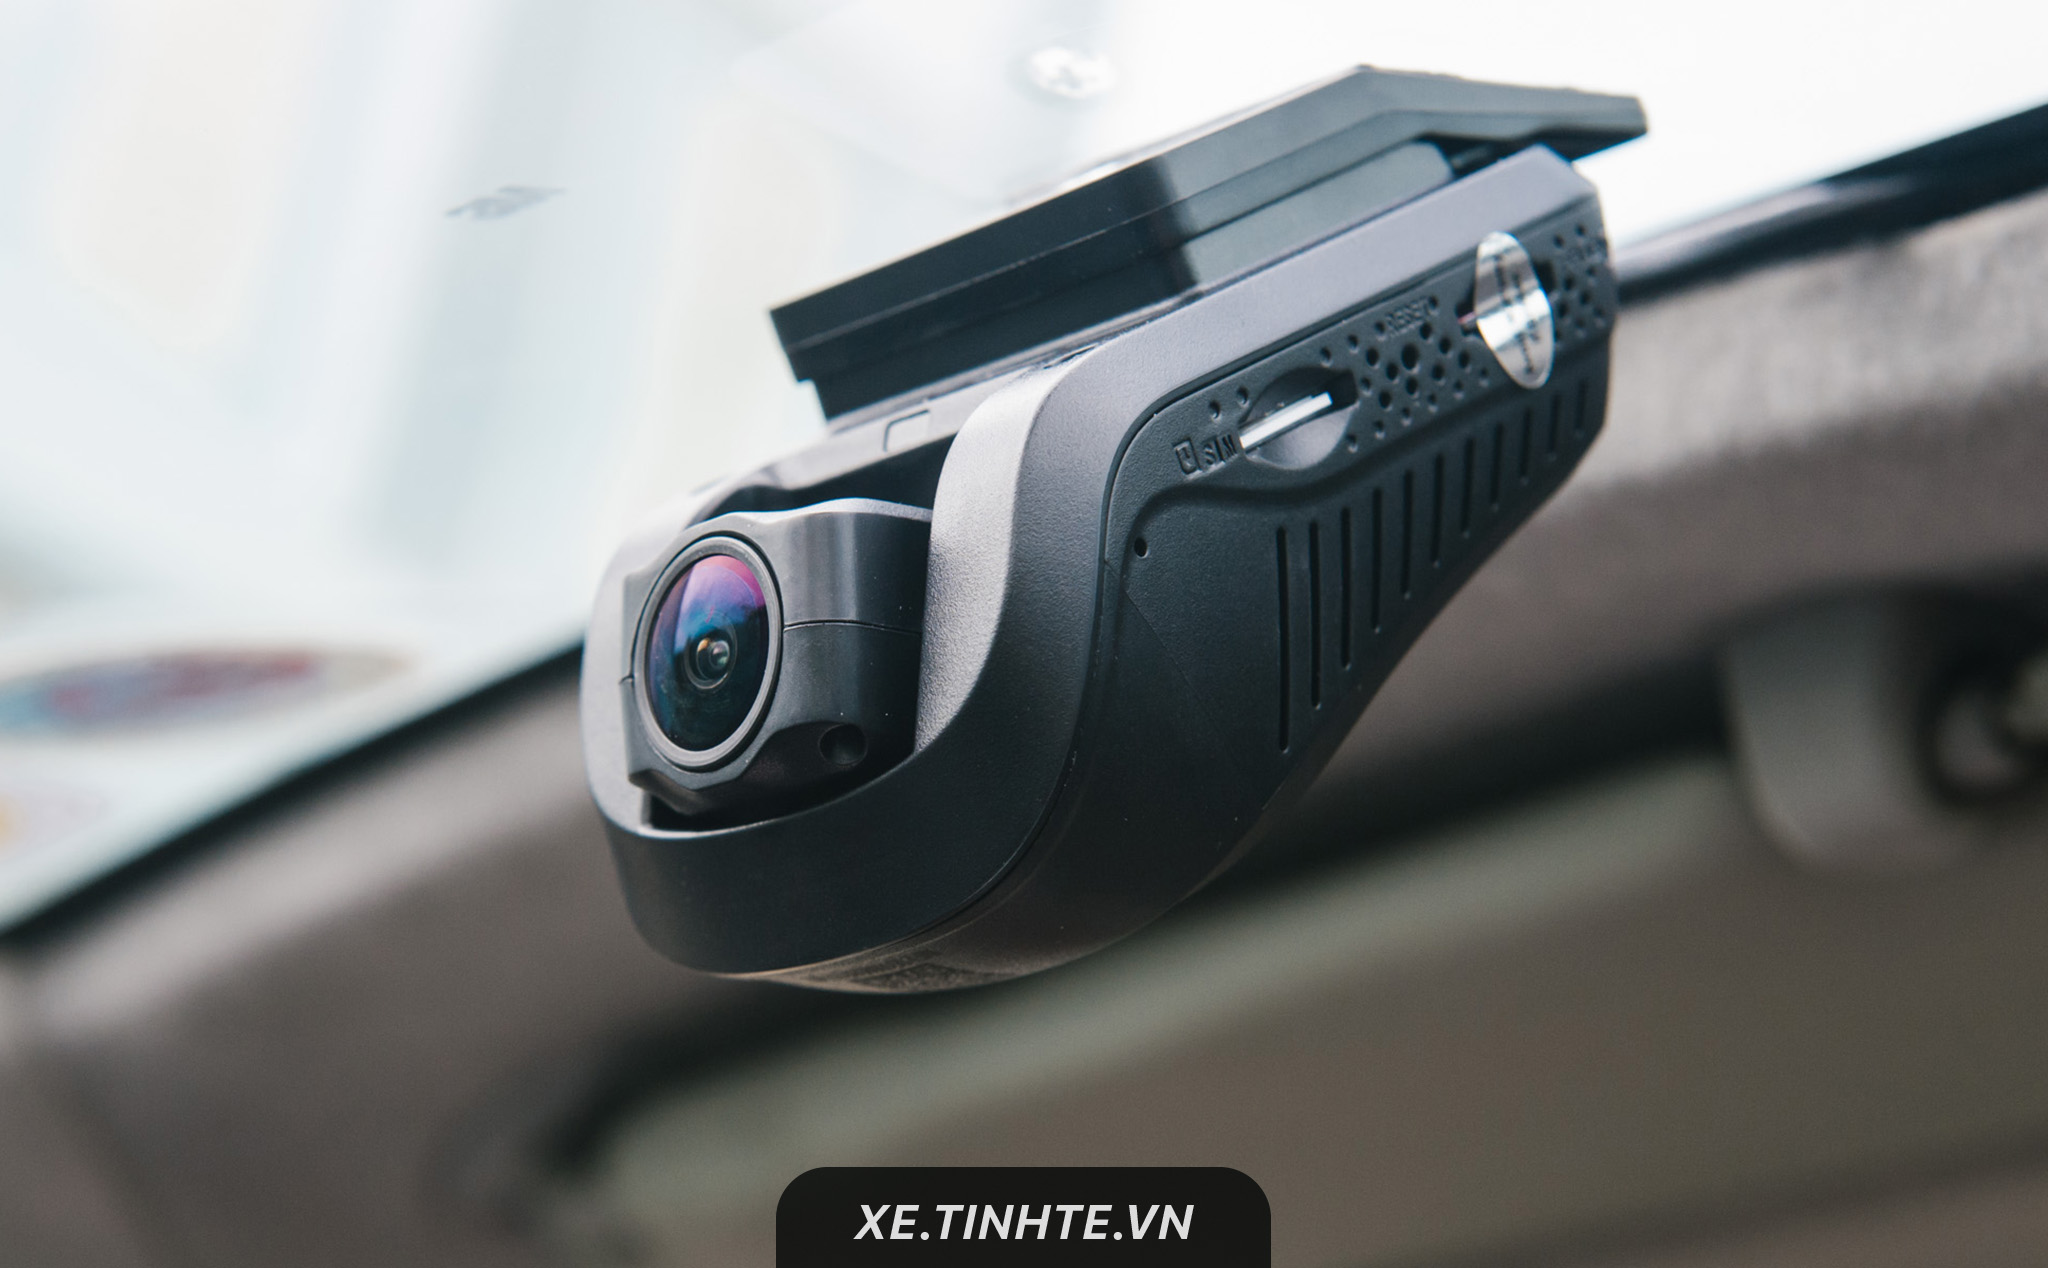 Trên tay camera hành trình Navicom J102 kiêm hộp đen, camera giám sát, phù hợp cho xe dịch vụ